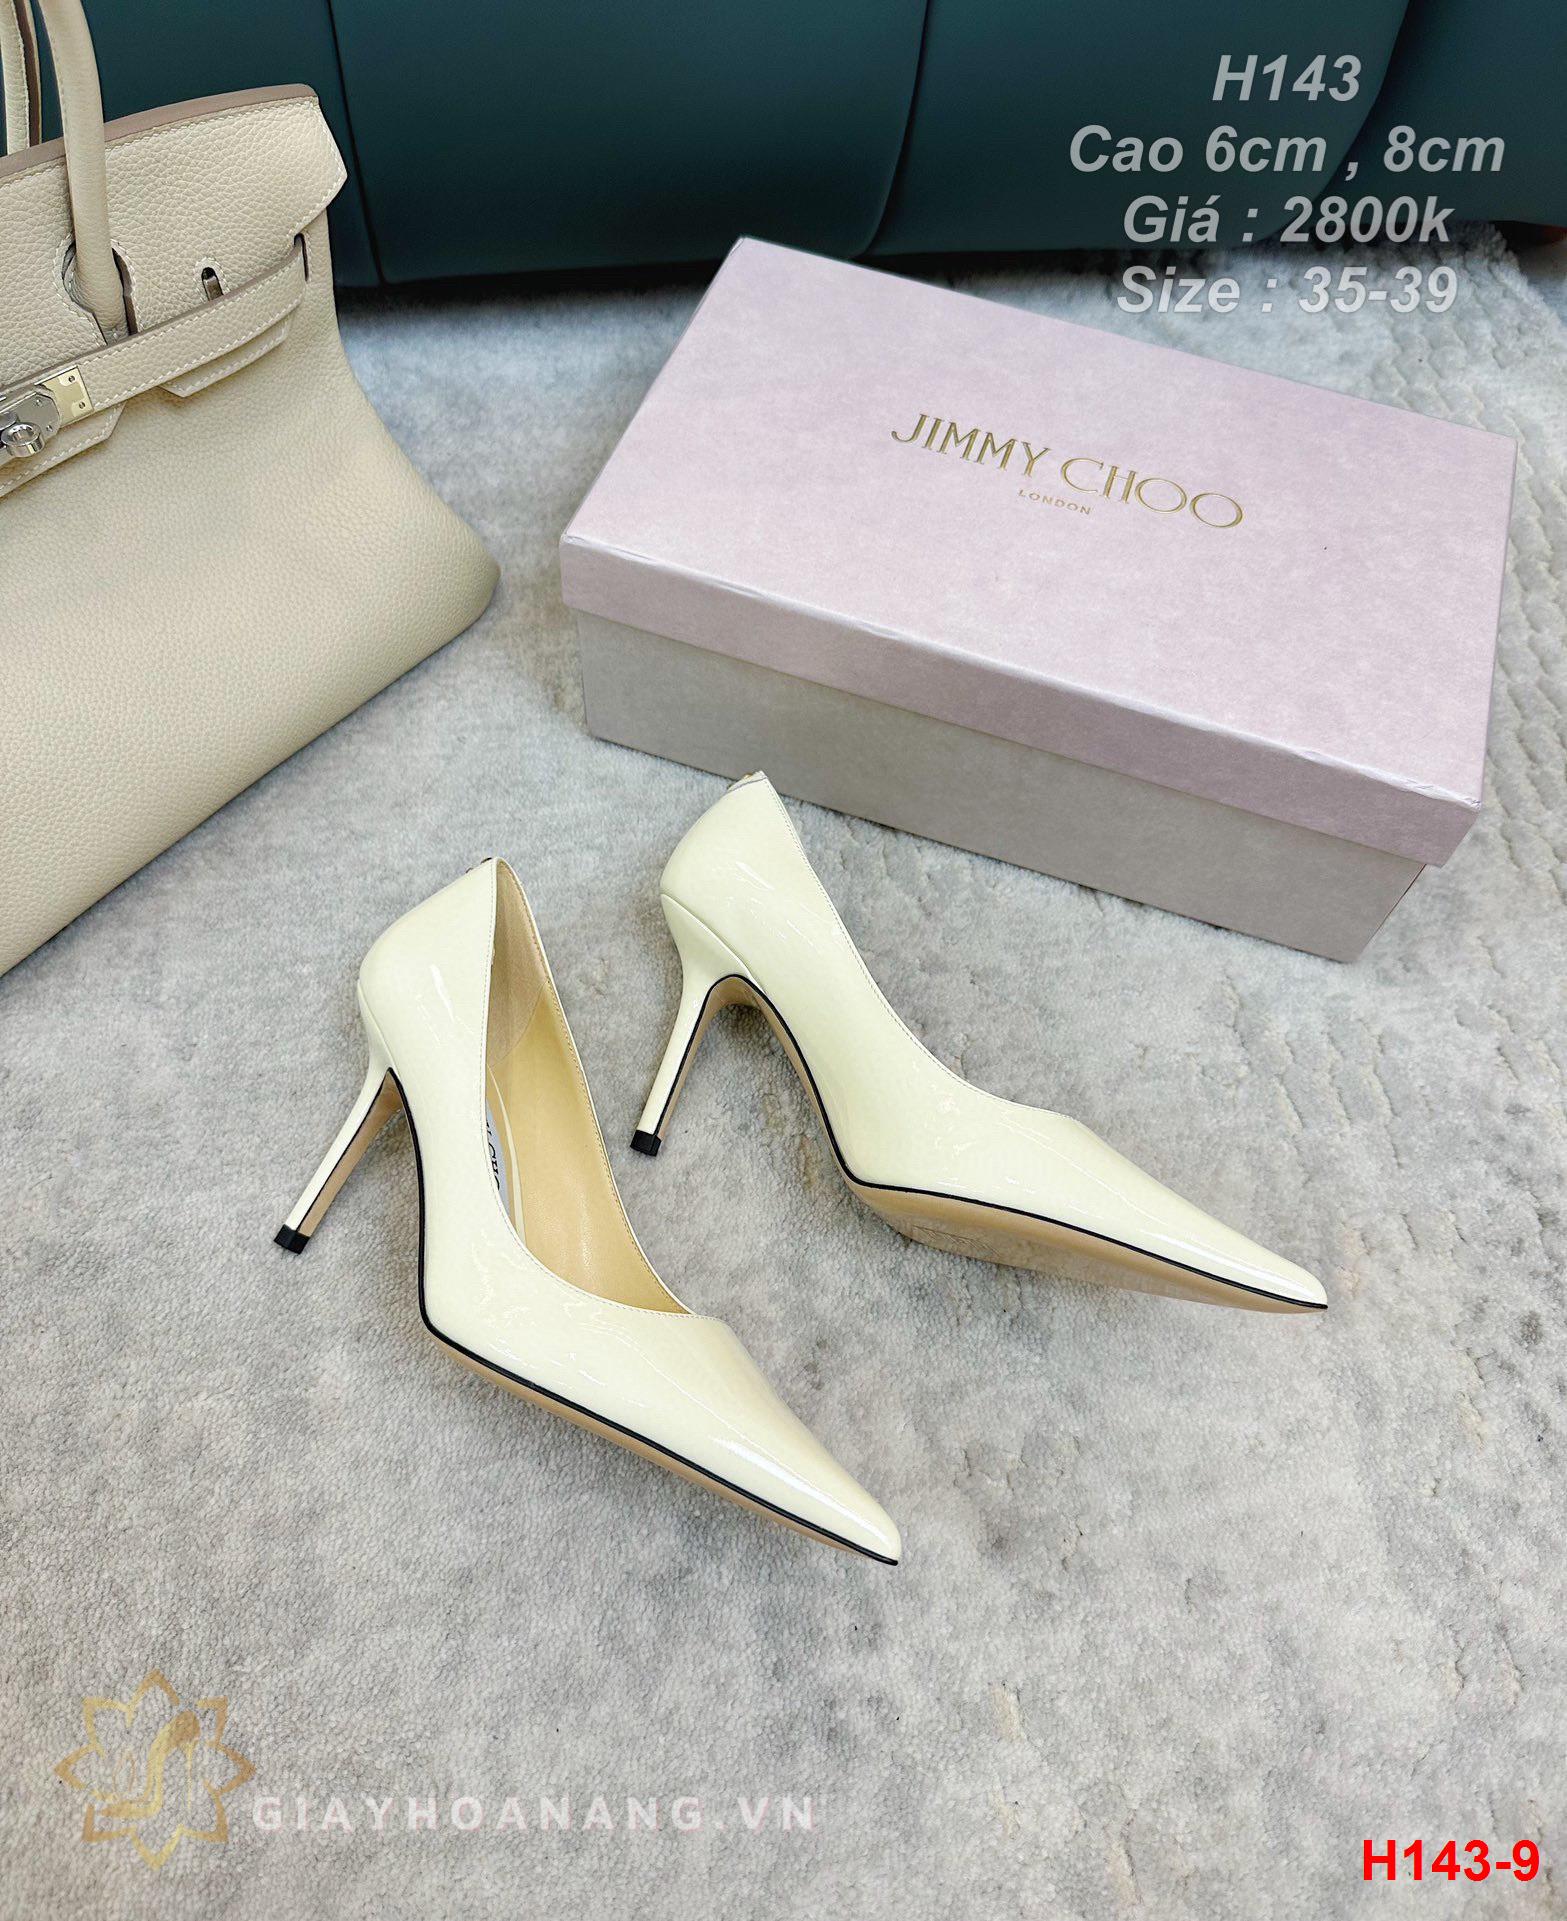 H143-9 Jimmy Choo giày cao gót 6cm , 8cm siêu cấp